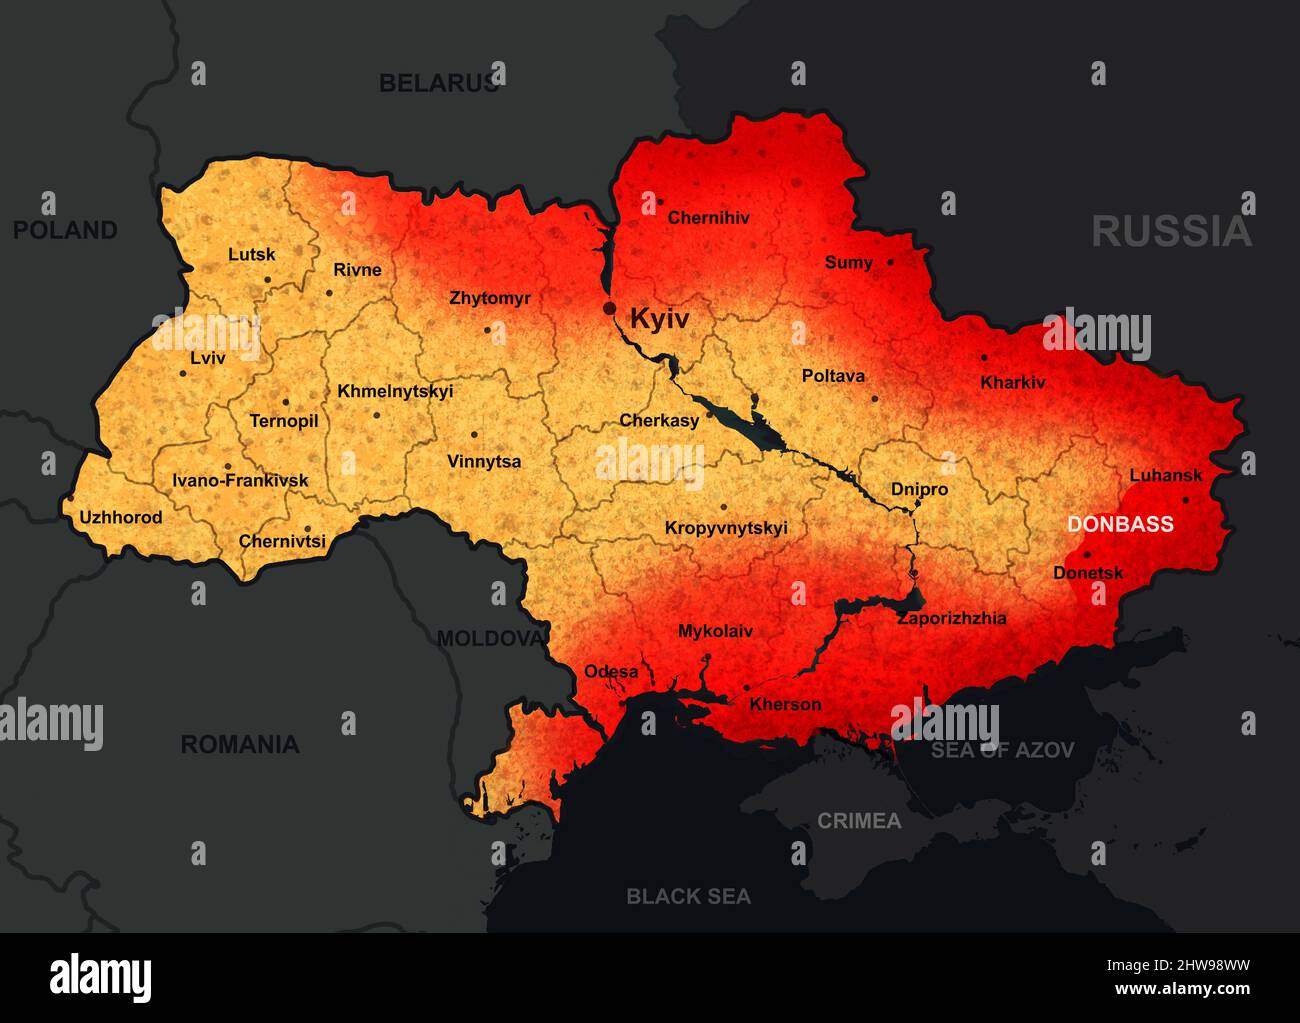 Krieg in der Ukraine auf der Karte, Illustration der allgemeinen russischen Invasion in der Ukraine. Ukrainisches Territorium und grenzt an die Region Donbass. Russland-Ukraine-Konfli Stockfoto